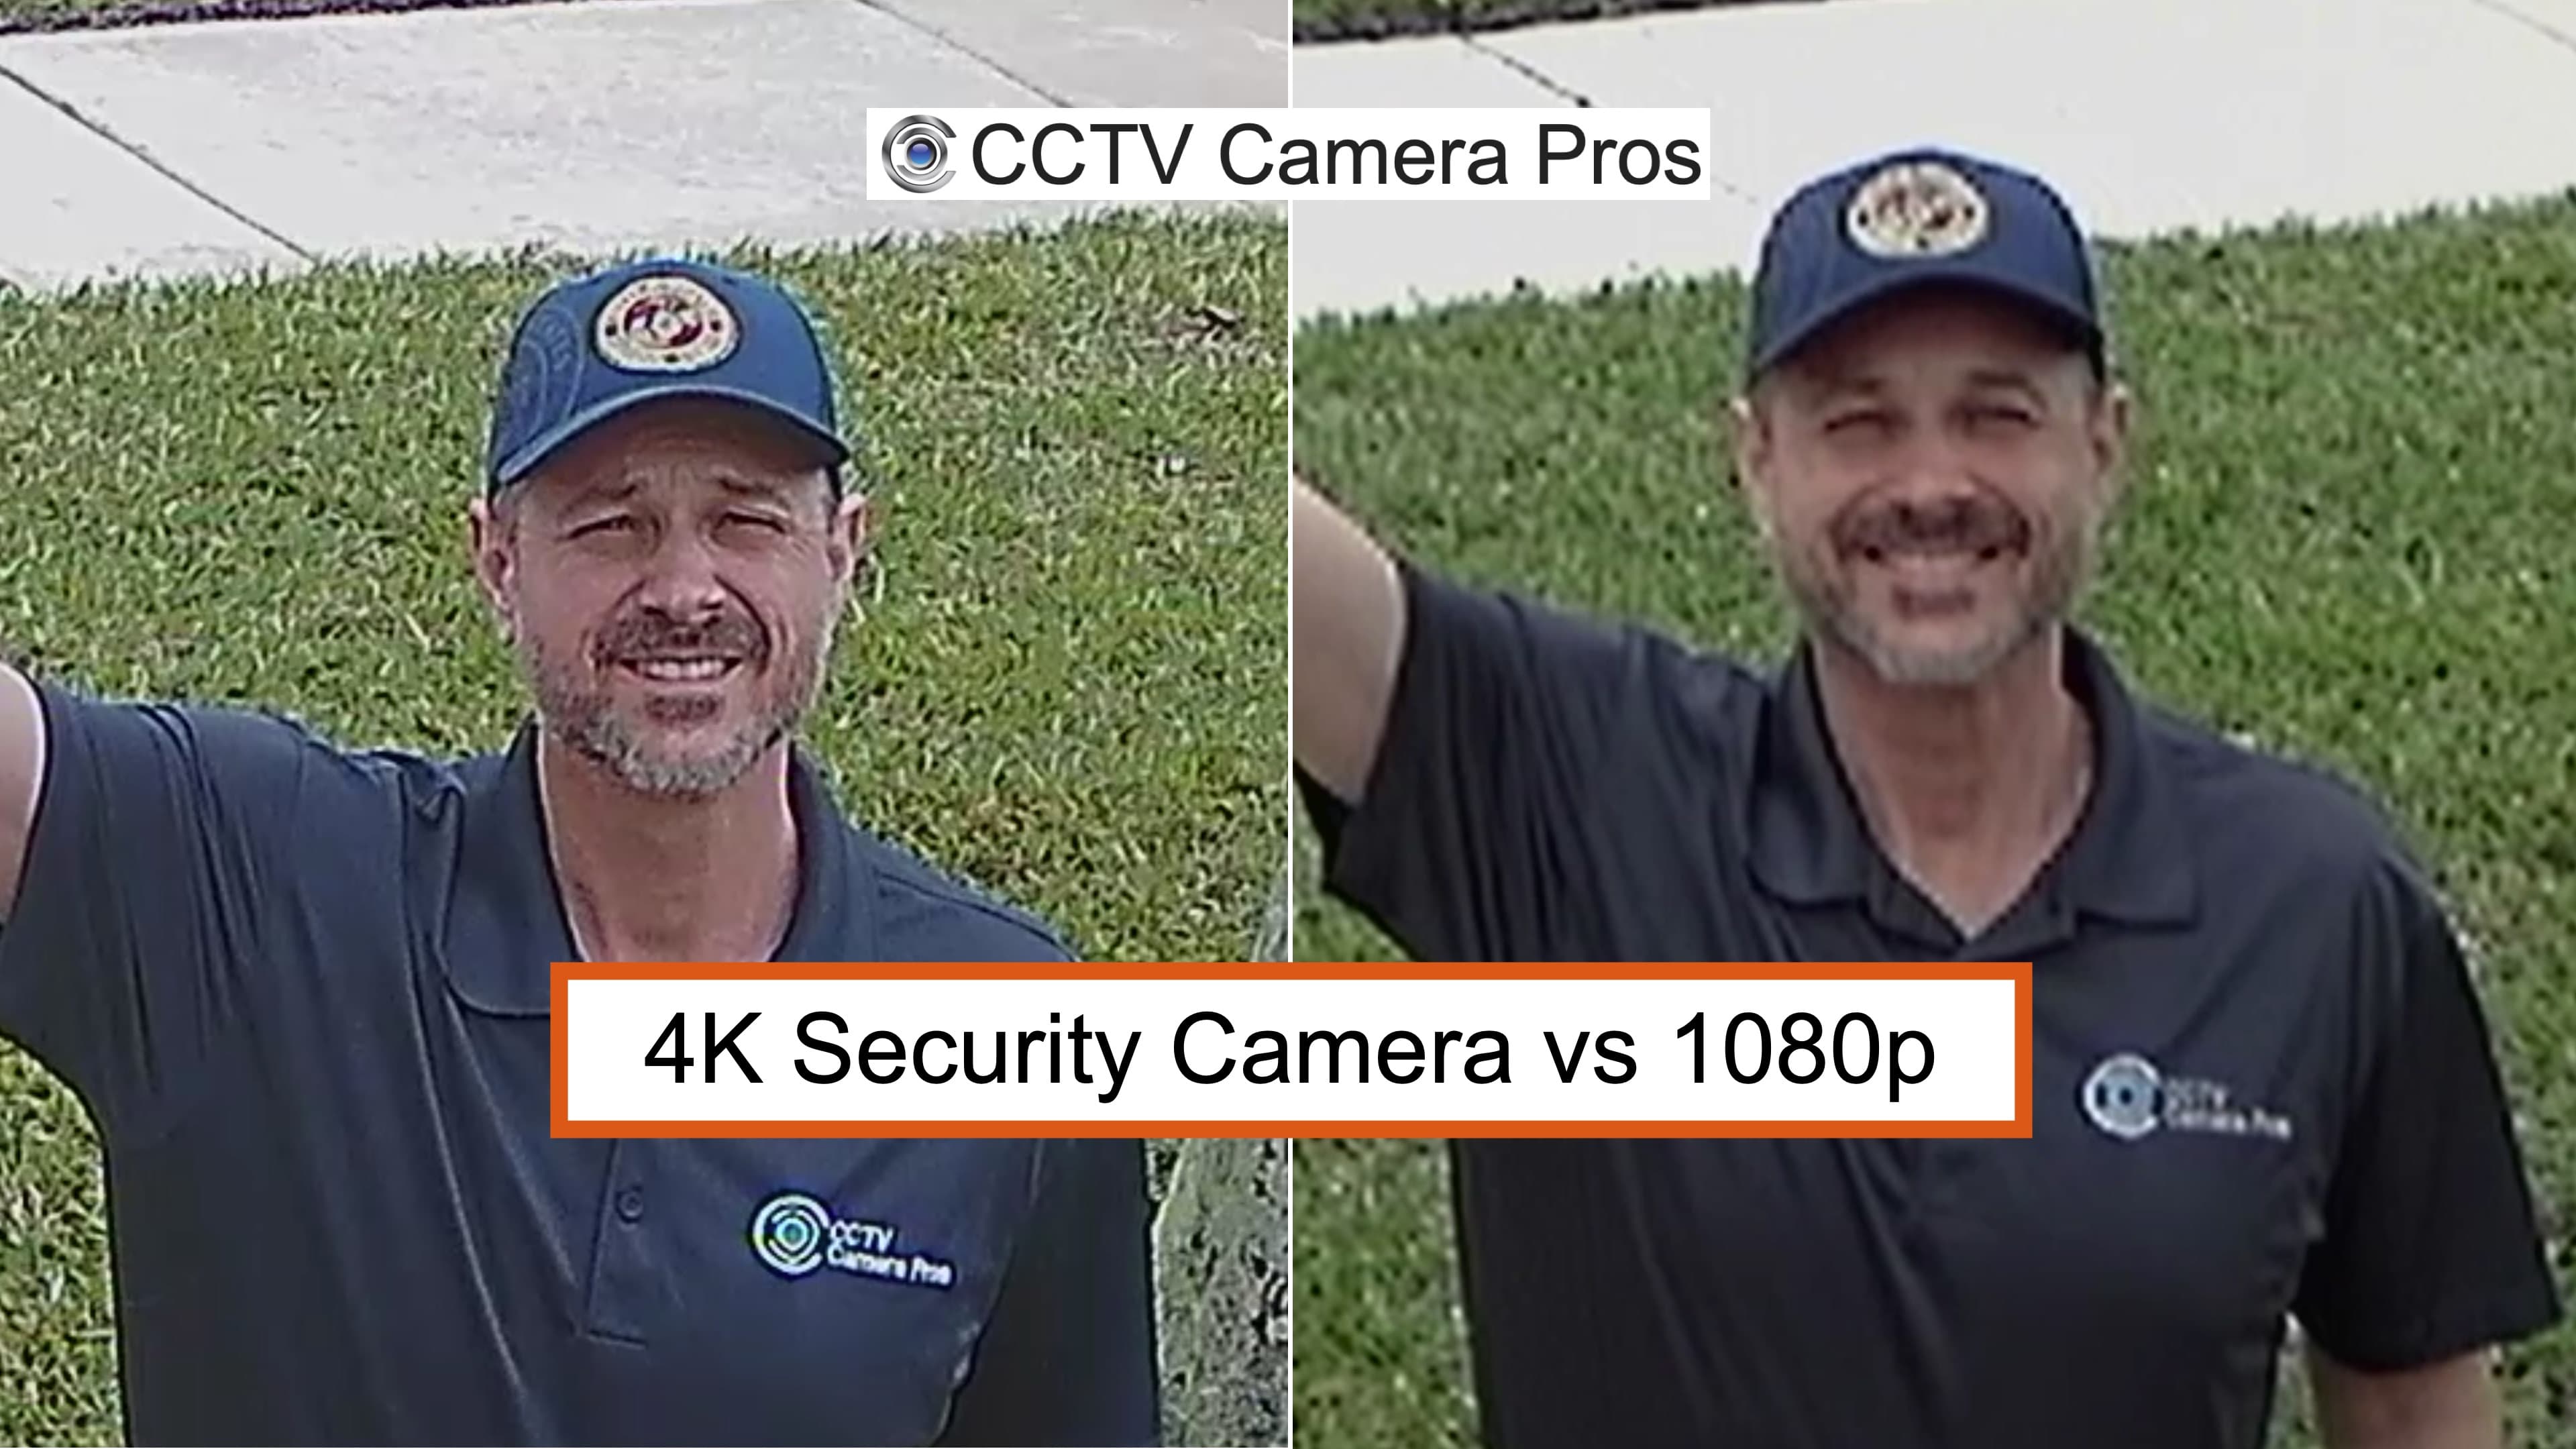 ¿Qué es 1080p en cámaras de seguridad?